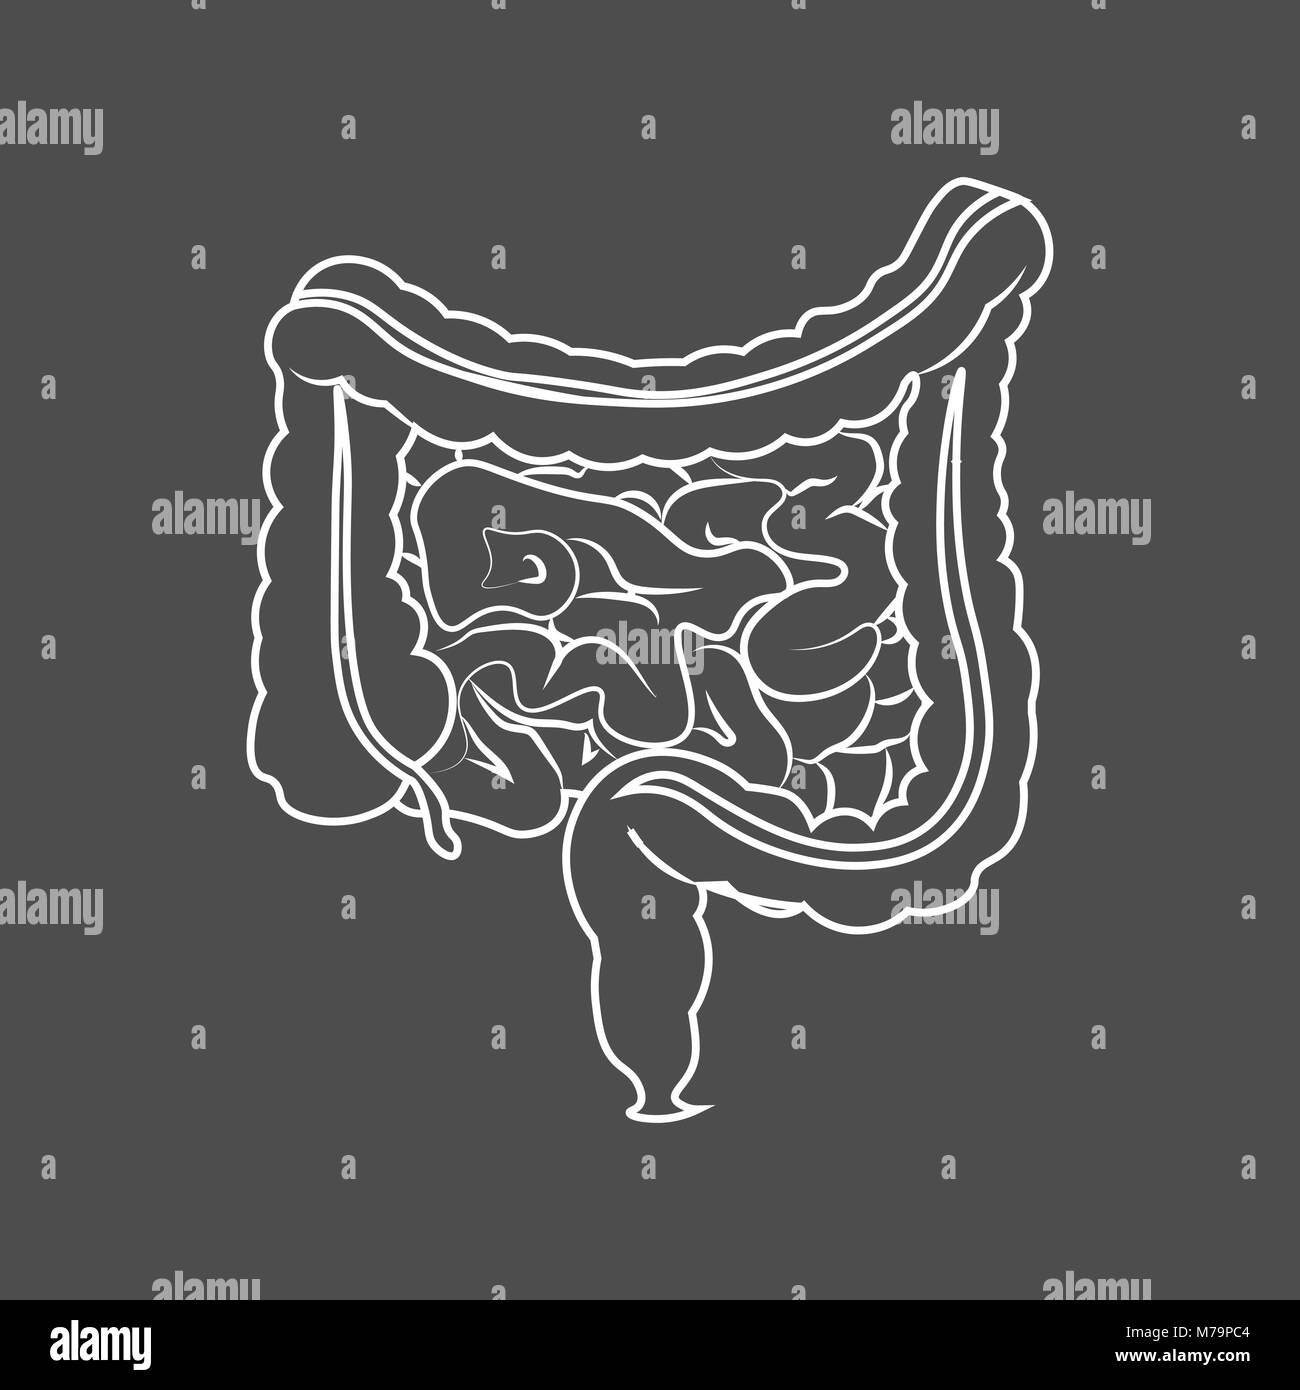 Apparato digestivo umano intestini gut anatomia del tratto gastrointestinale schema. Contorno monocromatica dell'intestino Illustrazione Vettoriale